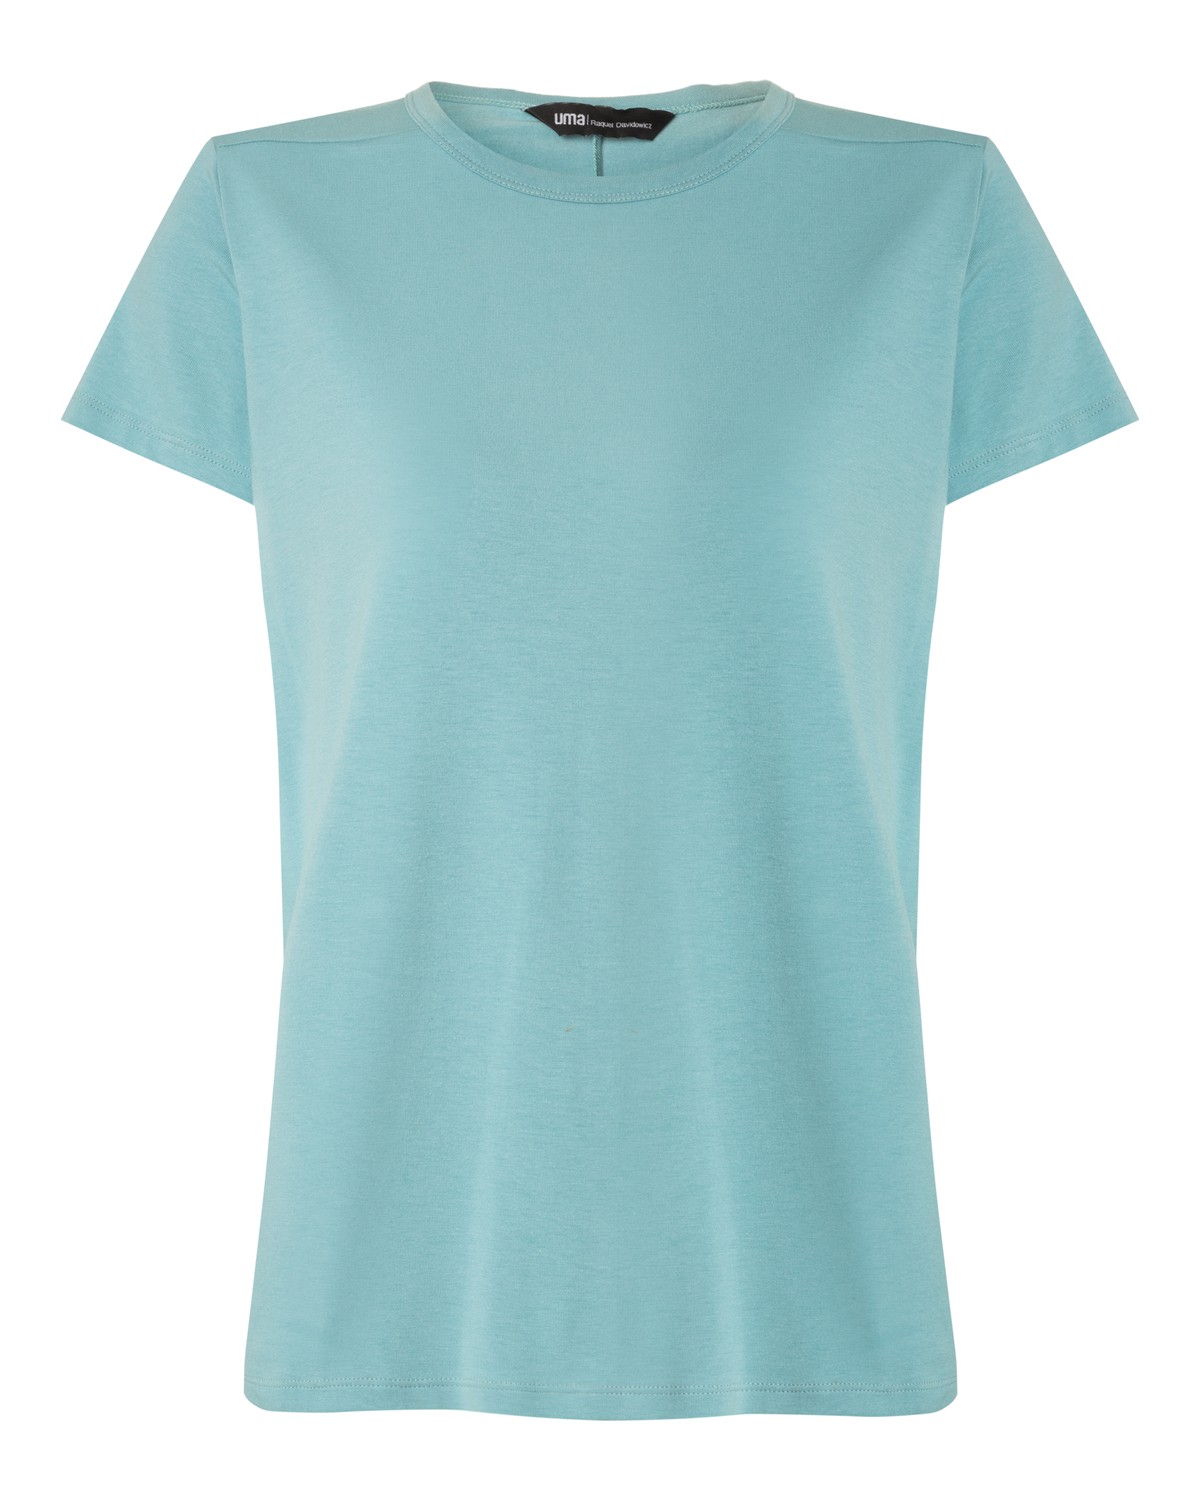 camiseta em algodão e modal | cotton modal jersey t-shirt